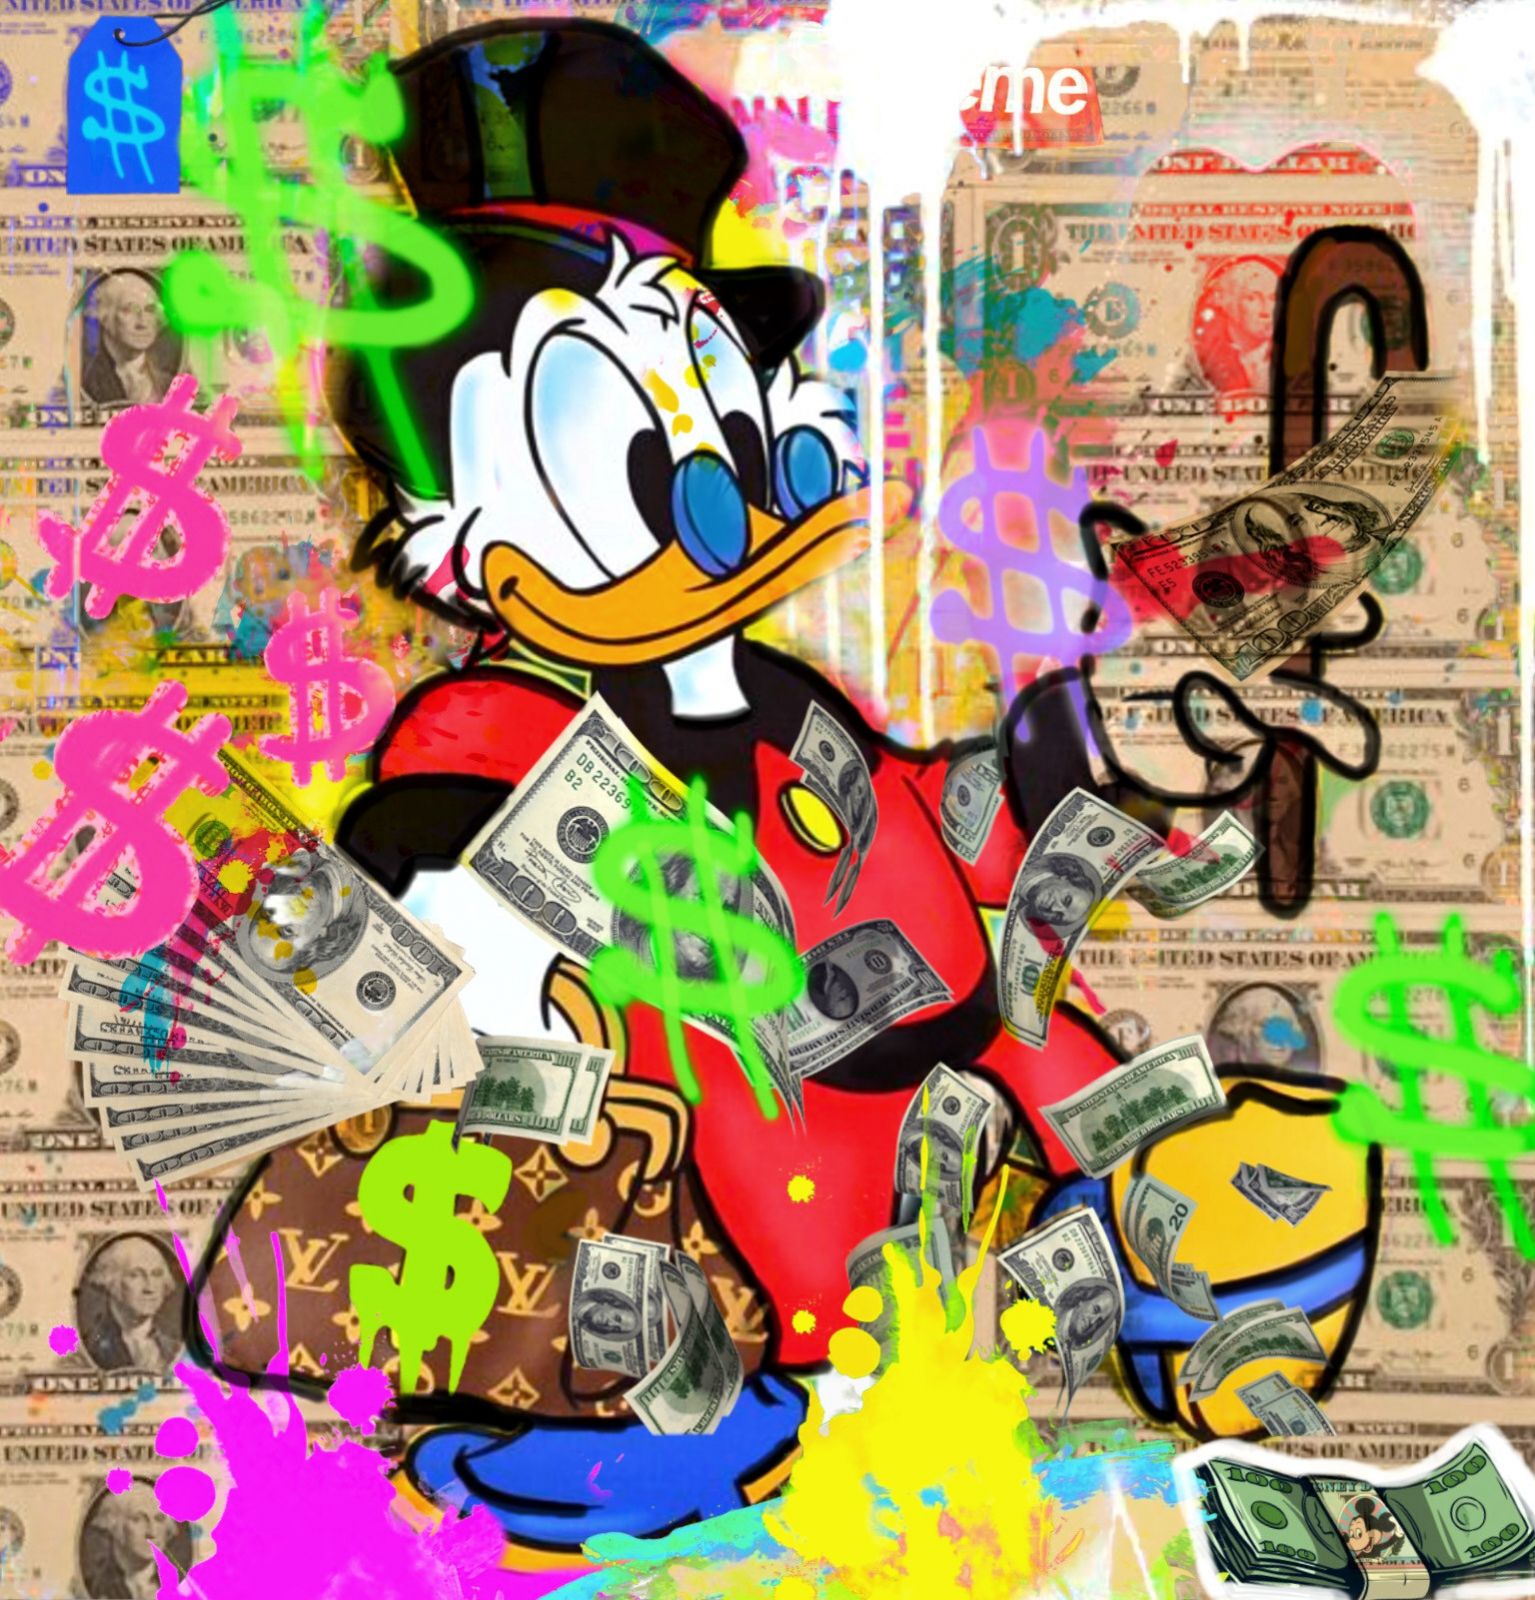 Felix-von-Altenheim-Scrooge-McDuck-Favorite-banknote-Neo-Popart-Printing-on-Plexiglas-